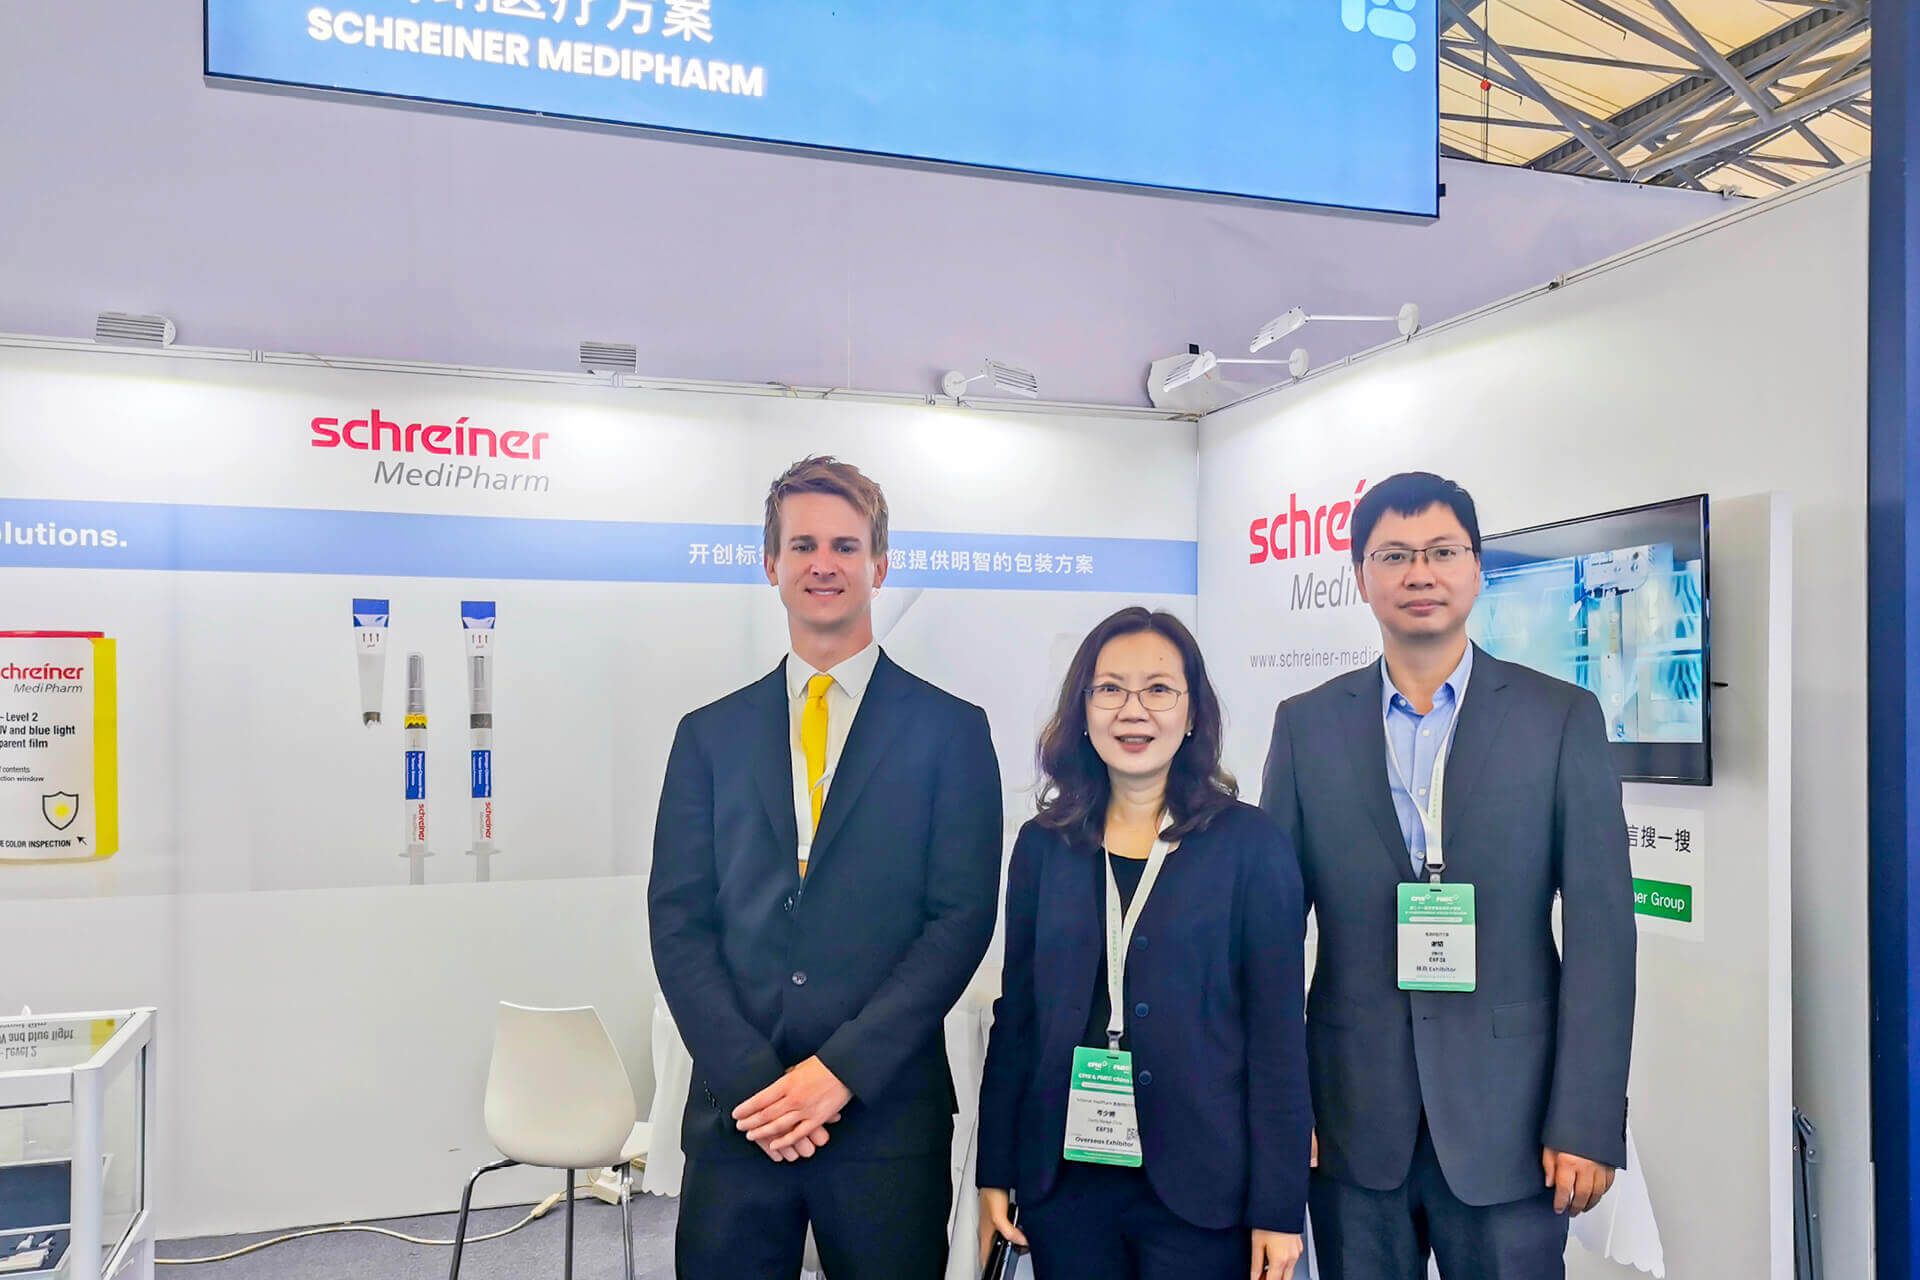 Schreiner MediPharm ist in China regelmäßig auf Messen und Kongressen vertreten, um seine Lösungen zu präsentieren und sich mit Kunden, Partnern und Interessenten auszutauschen.